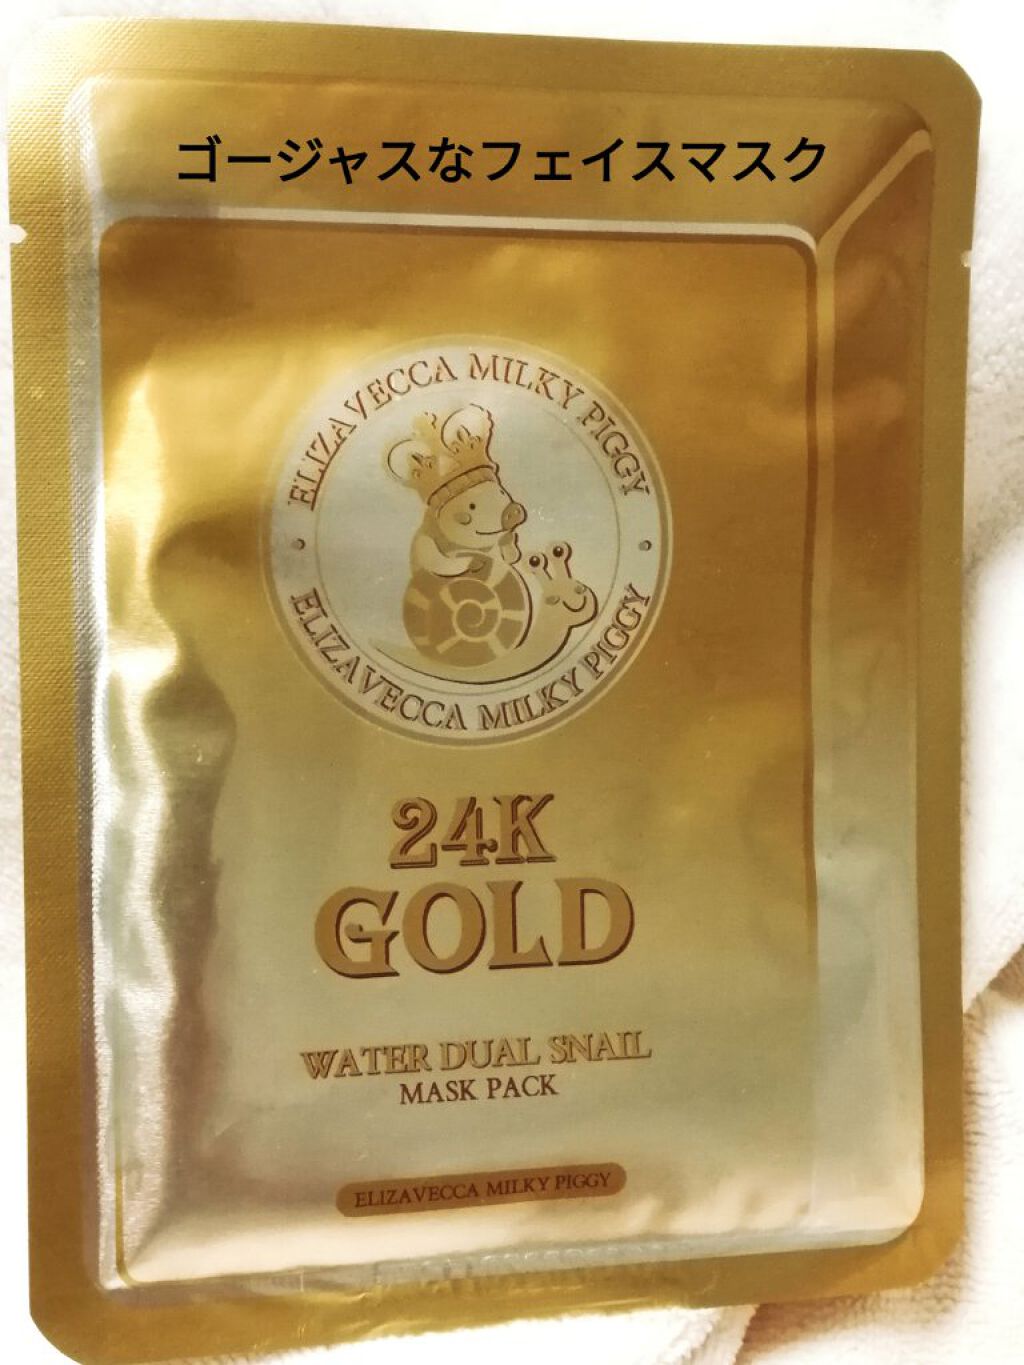 試してみた】Milky Piggy 24K GOLD WATER DUAL SNAIL MASK PACK／Elizavecca | LIPS